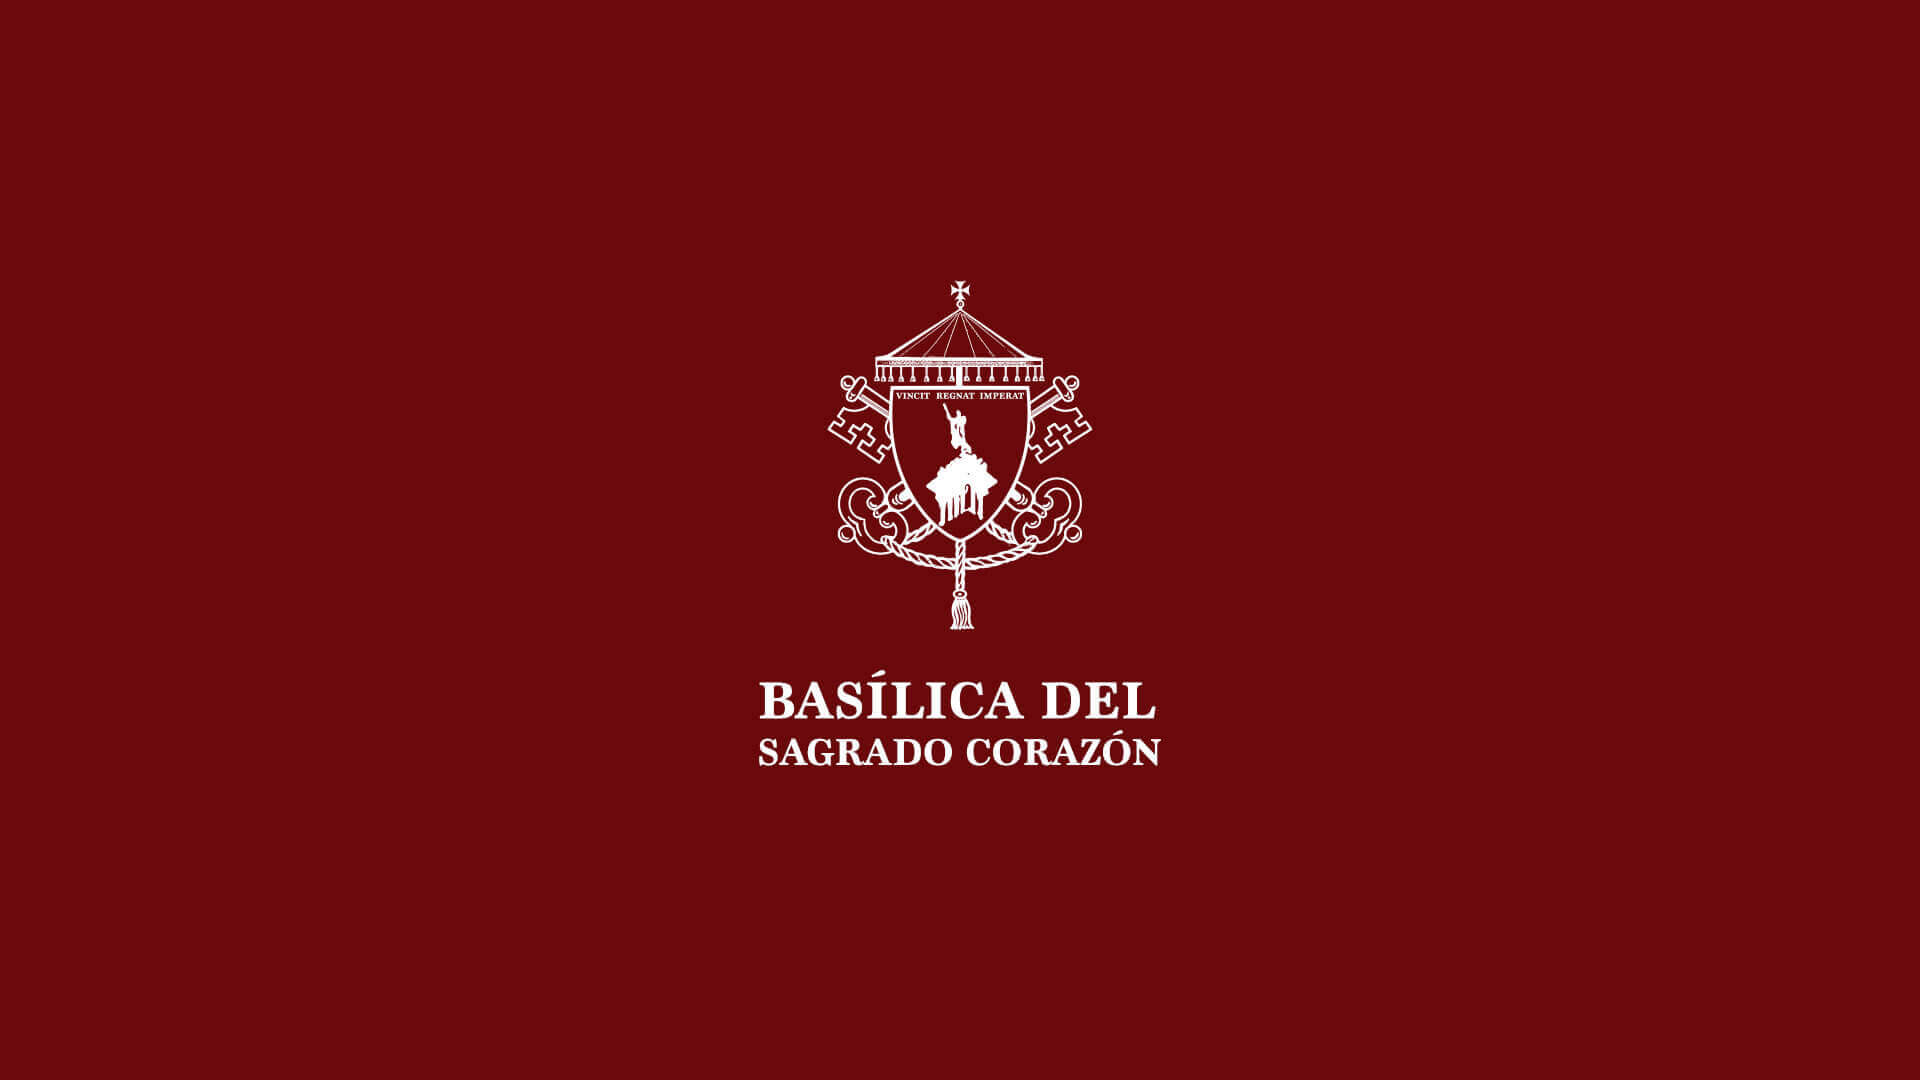 La Basílica comienza sus retransmisiones en directo por YouTube